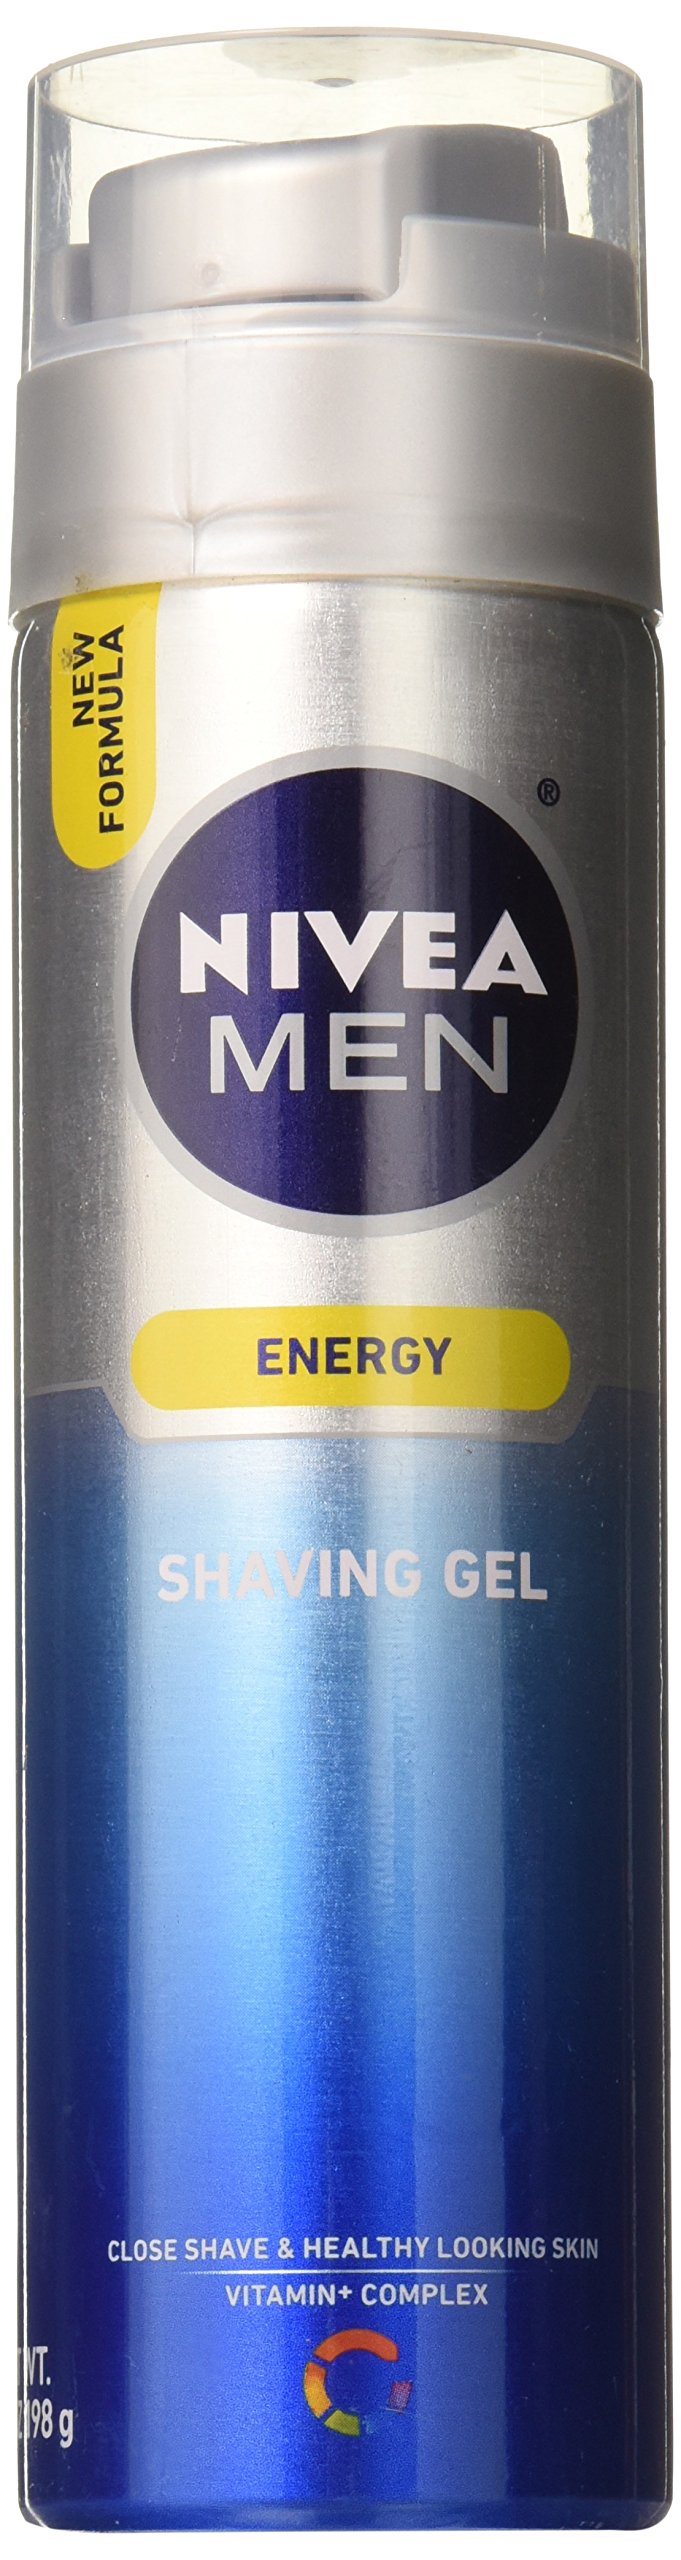 NIVEA FOR MEN Energy, Shaving Gel 7 oz